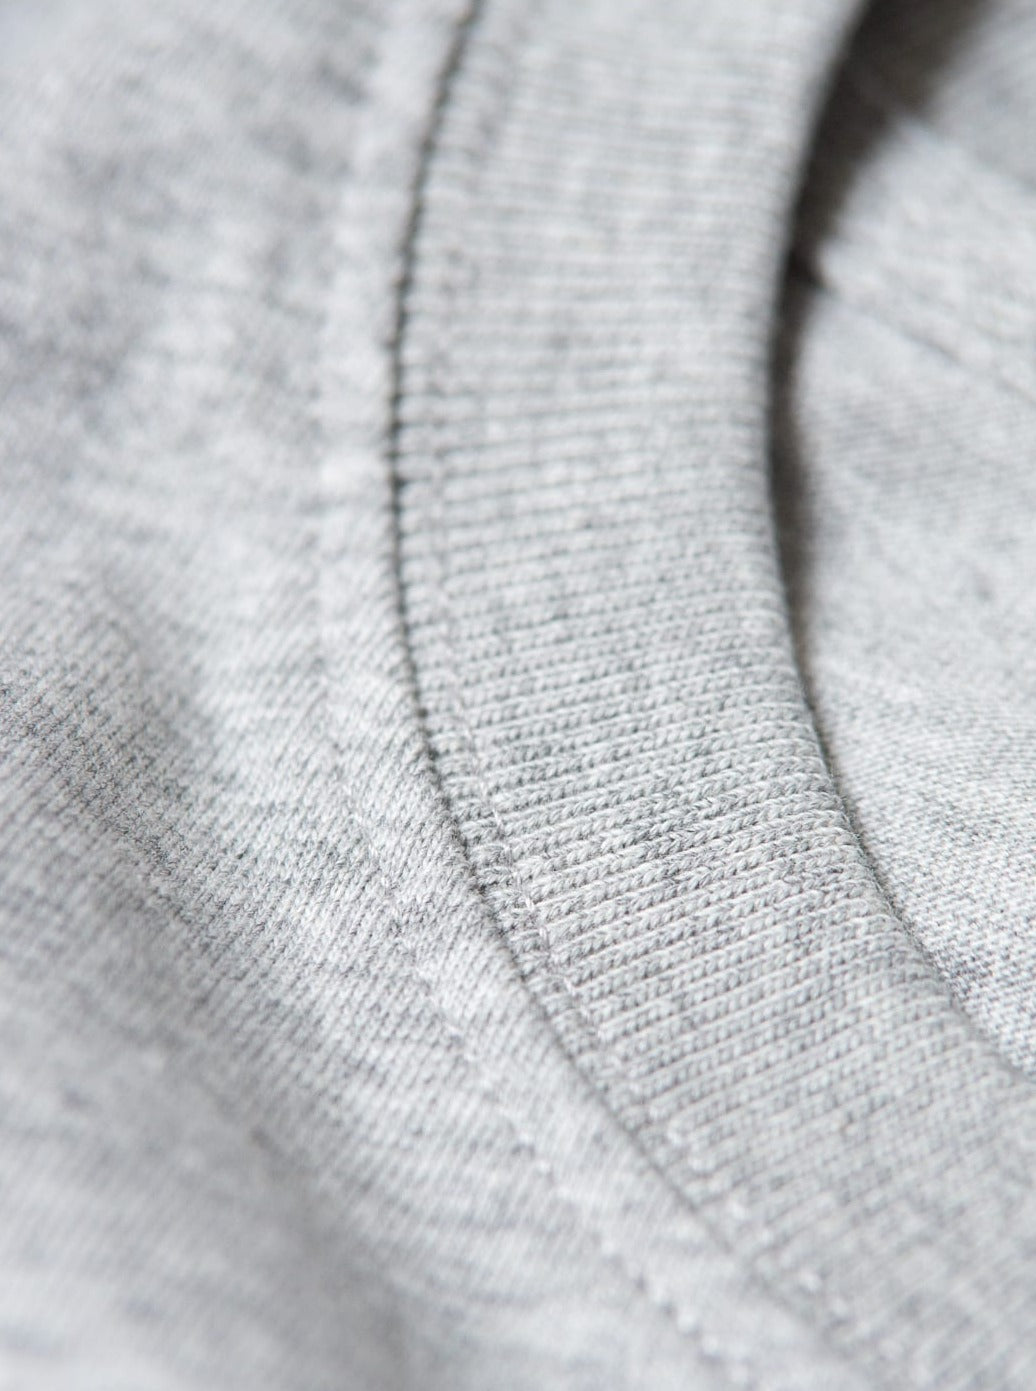 Nachhaltiges Unisex Basic T-Shirt von FUXBAU aus 100% GOTS zertifizierter Biobaumwolle in grau.